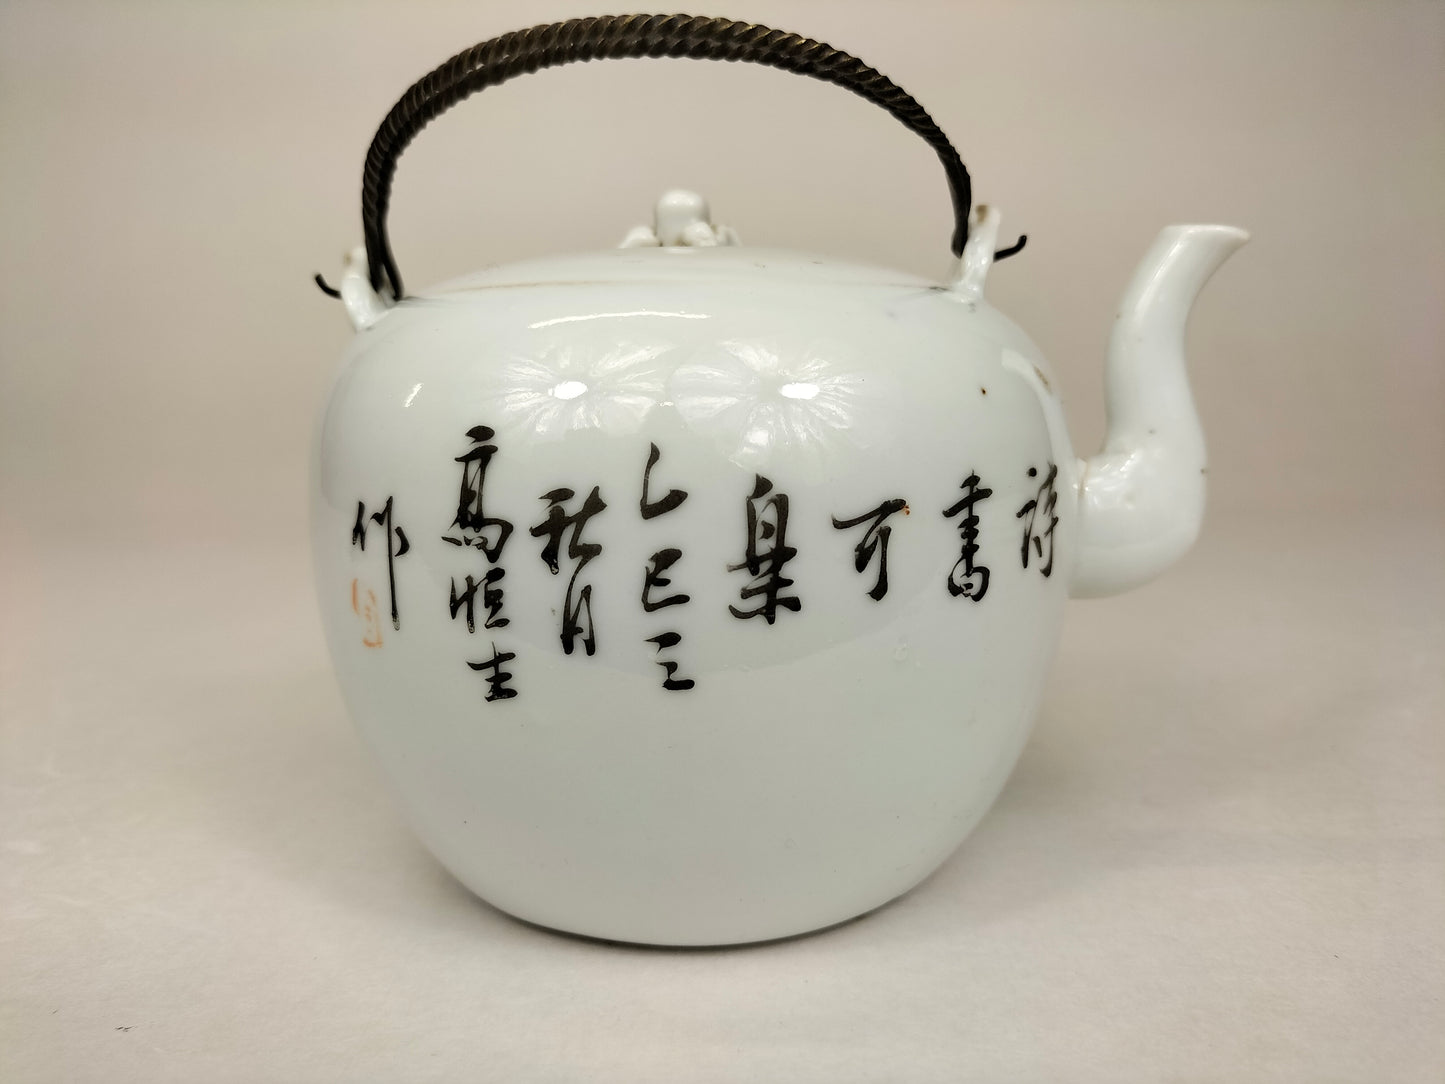 Ấm trà cổ qianjiang cai của Trung Quốc được trang trí bằng cây xô thơm và đứa trẻ // Thời kỳ Cộng hòa (1912-1949)